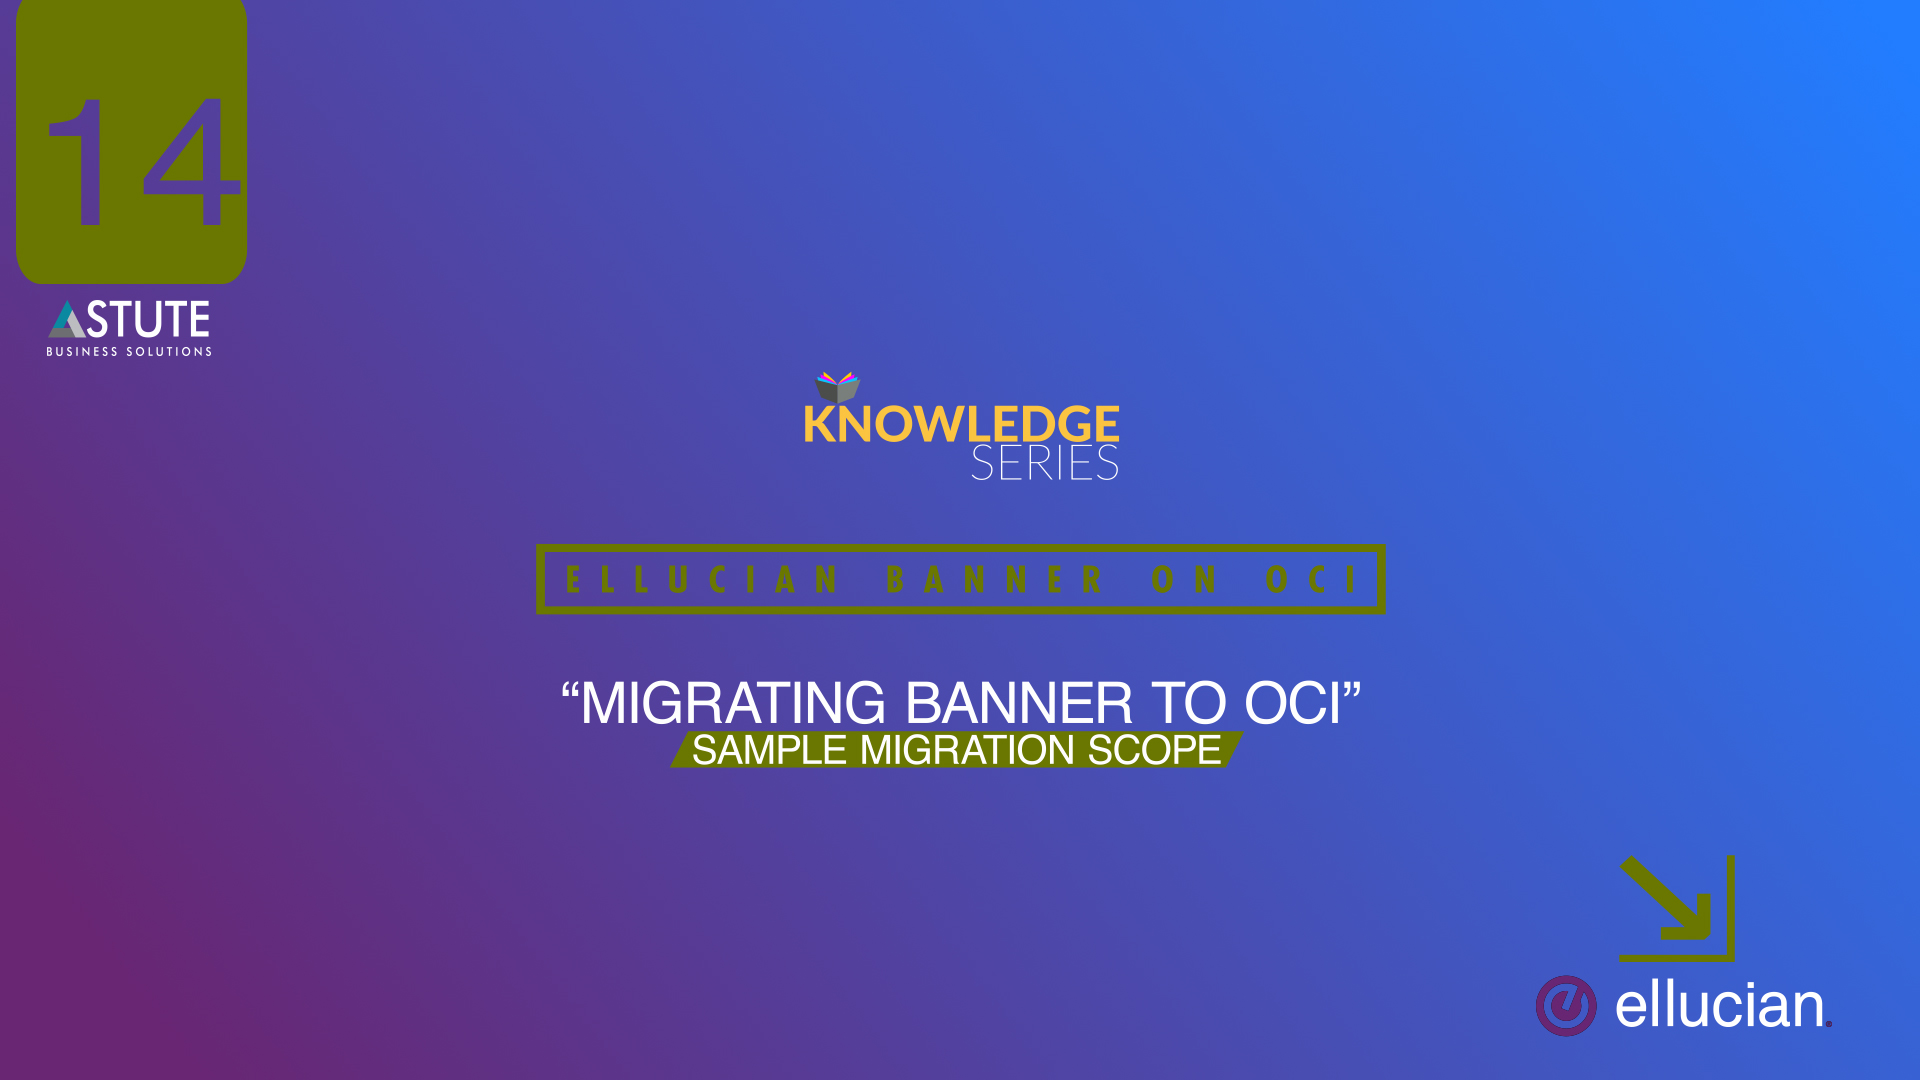 #14 Ellucian _Migrating Banner To OCI- Sample Migration Scope